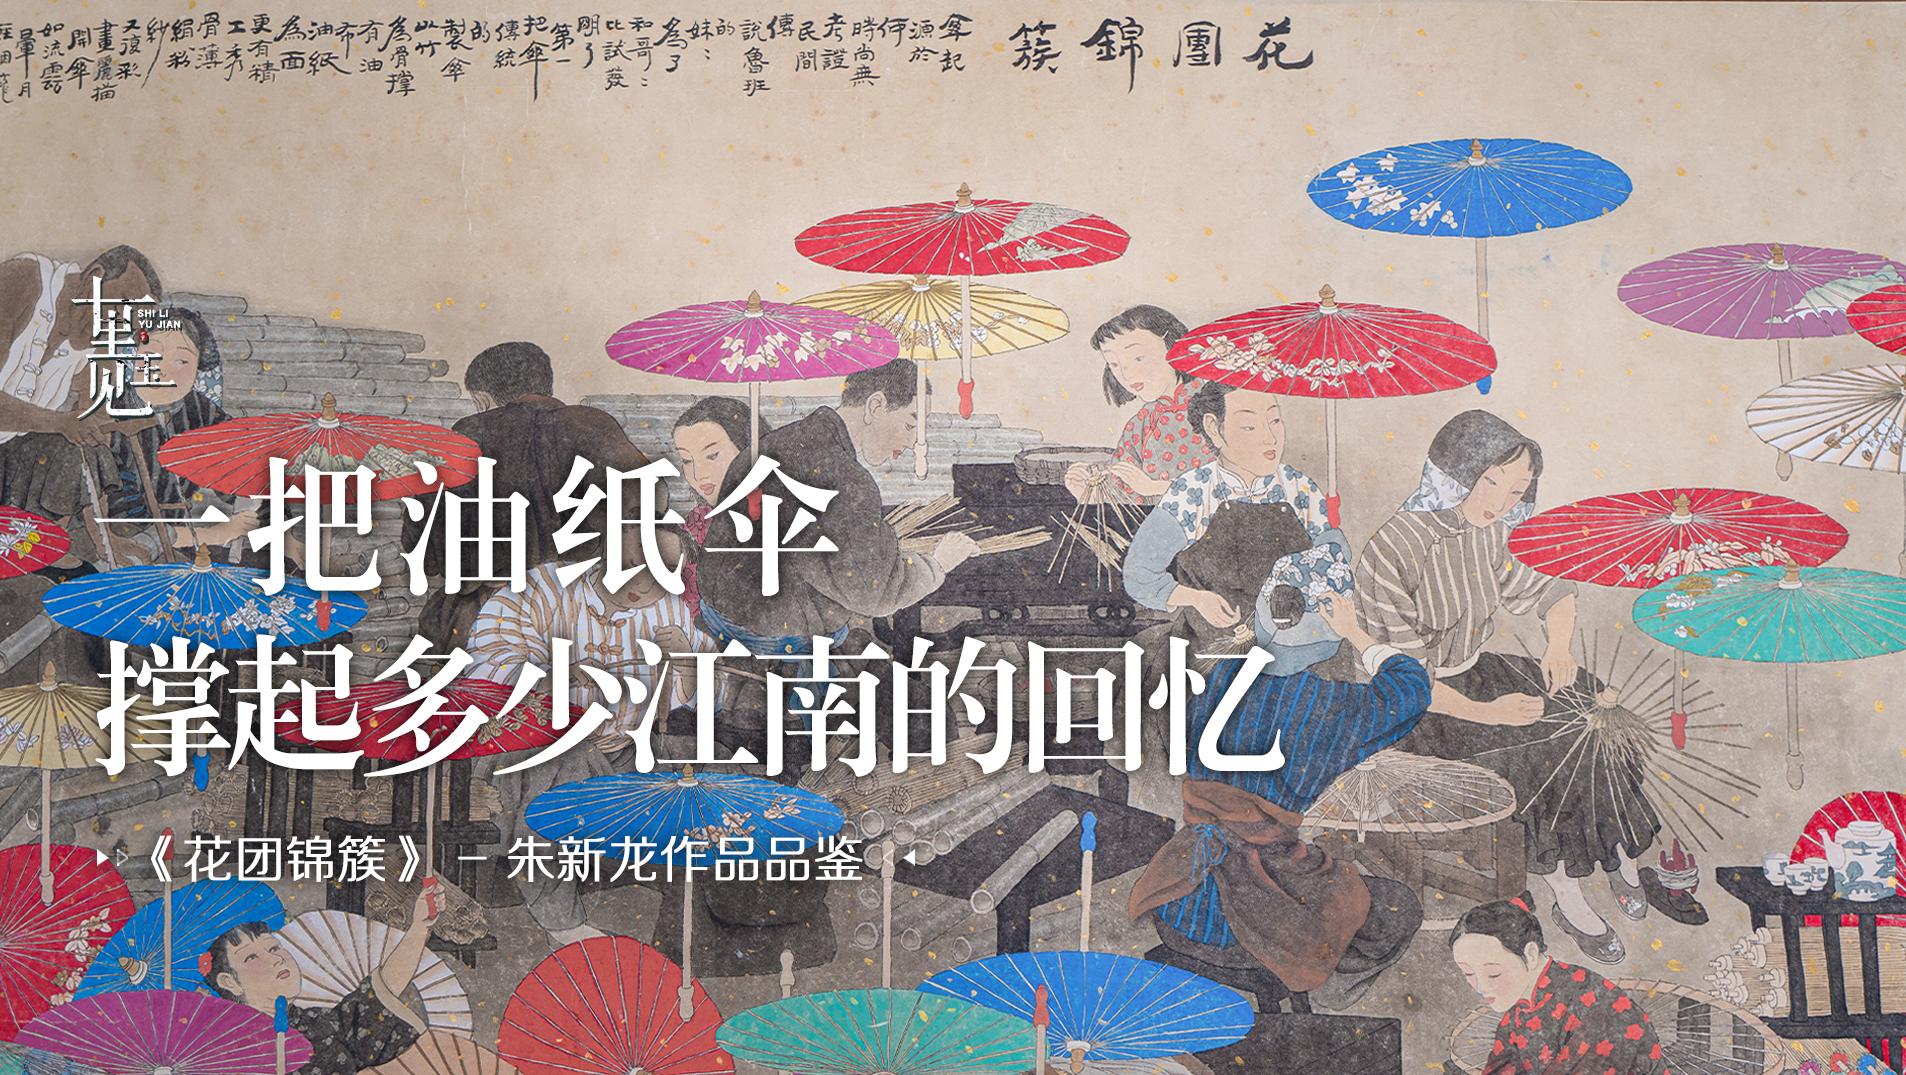 中国画：一柄绸伞，万分心血，画家用笔墨还原旧时制伞场景